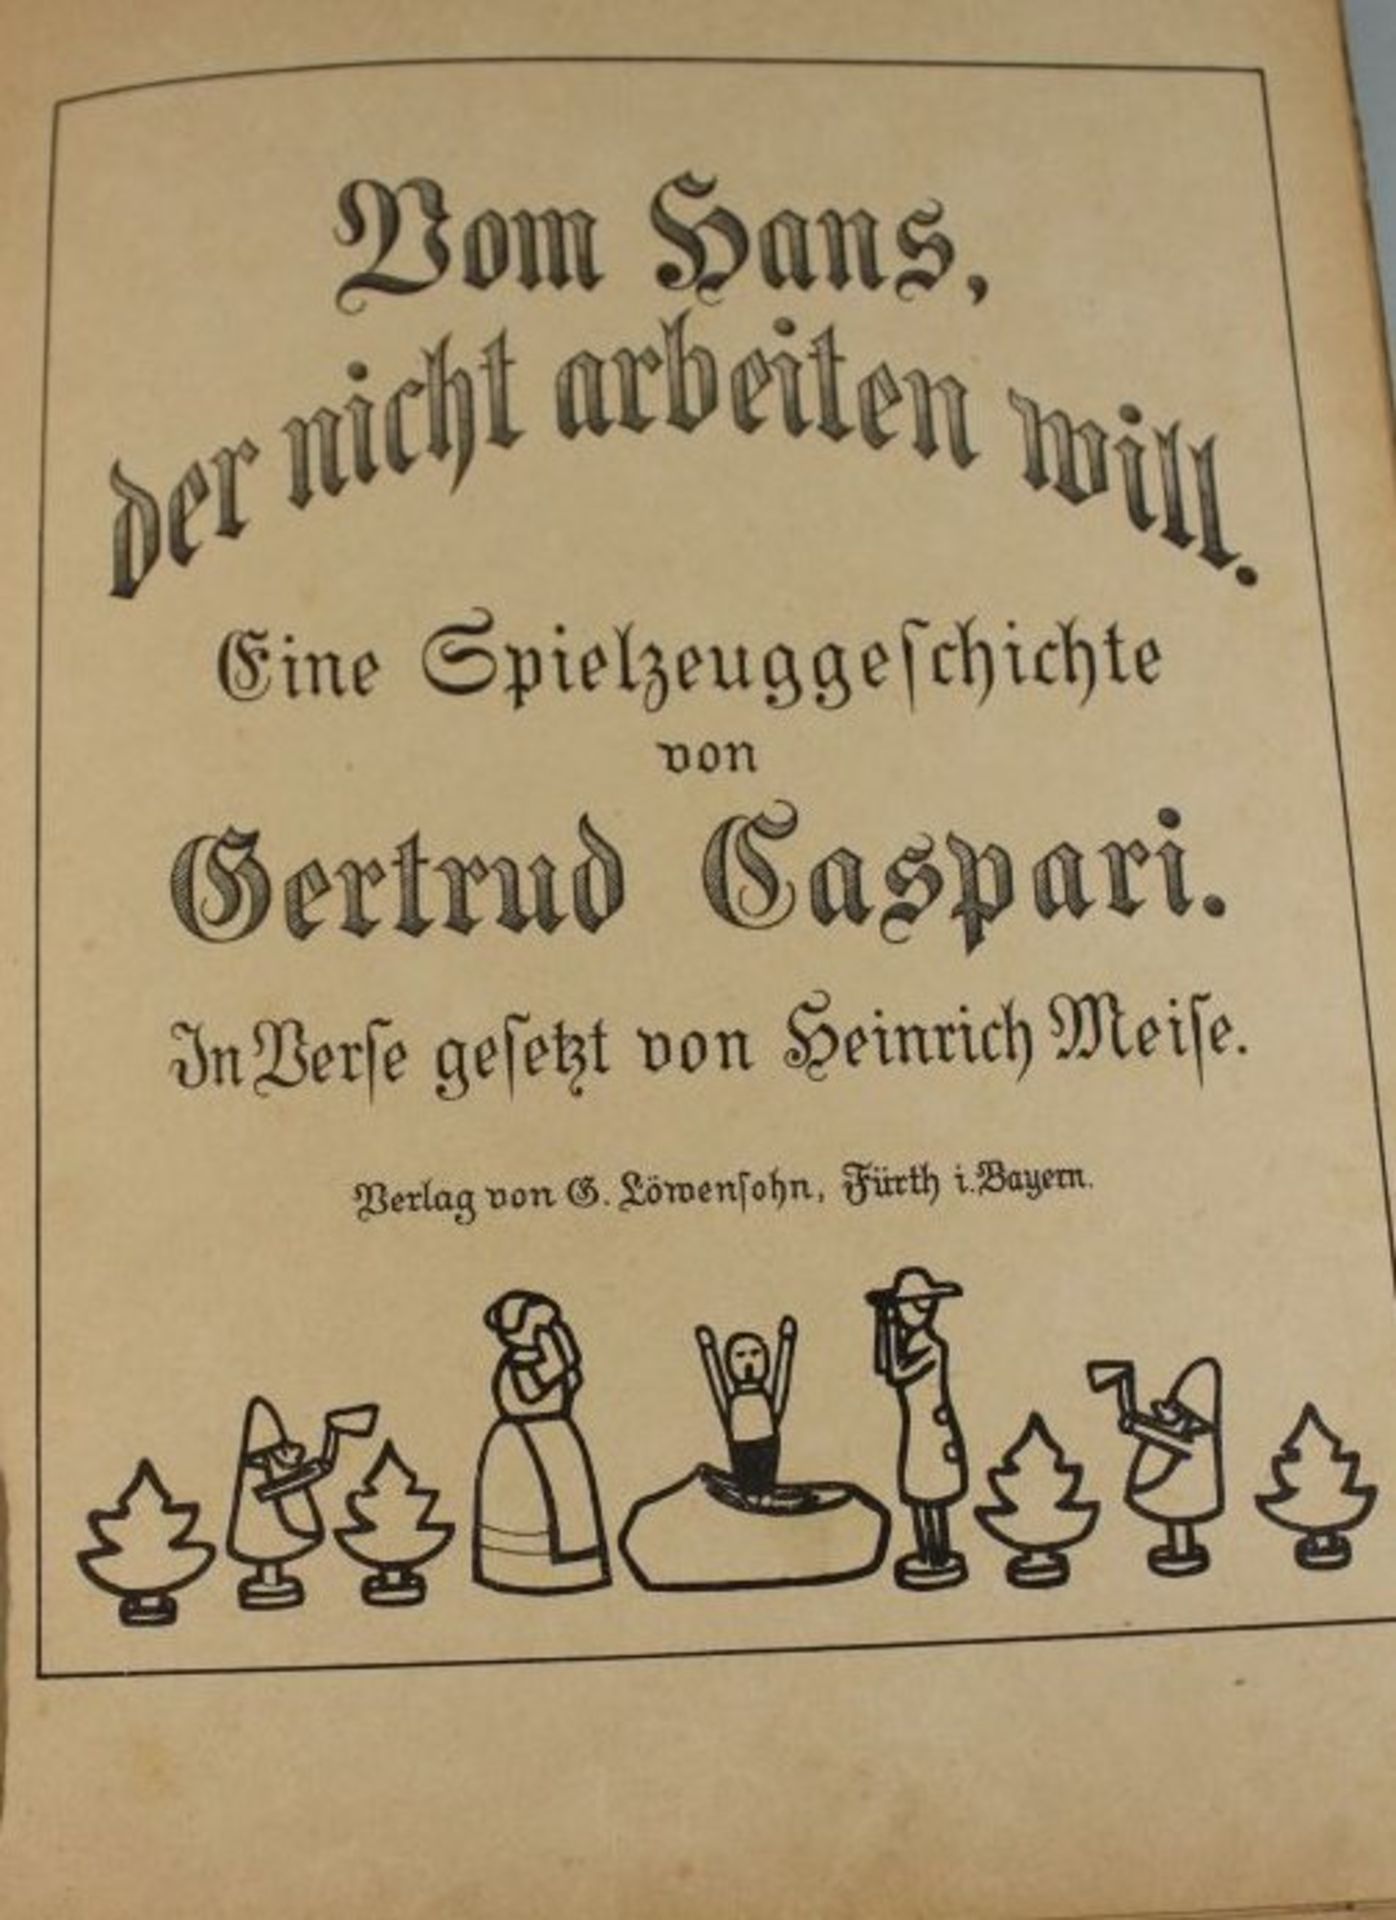 Vom Hans der nicht arbeiten will - Eine Spielzeuggeschichte, Gertrude Caspari, o.J. wohl um 1900, - Bild 2 aus 4